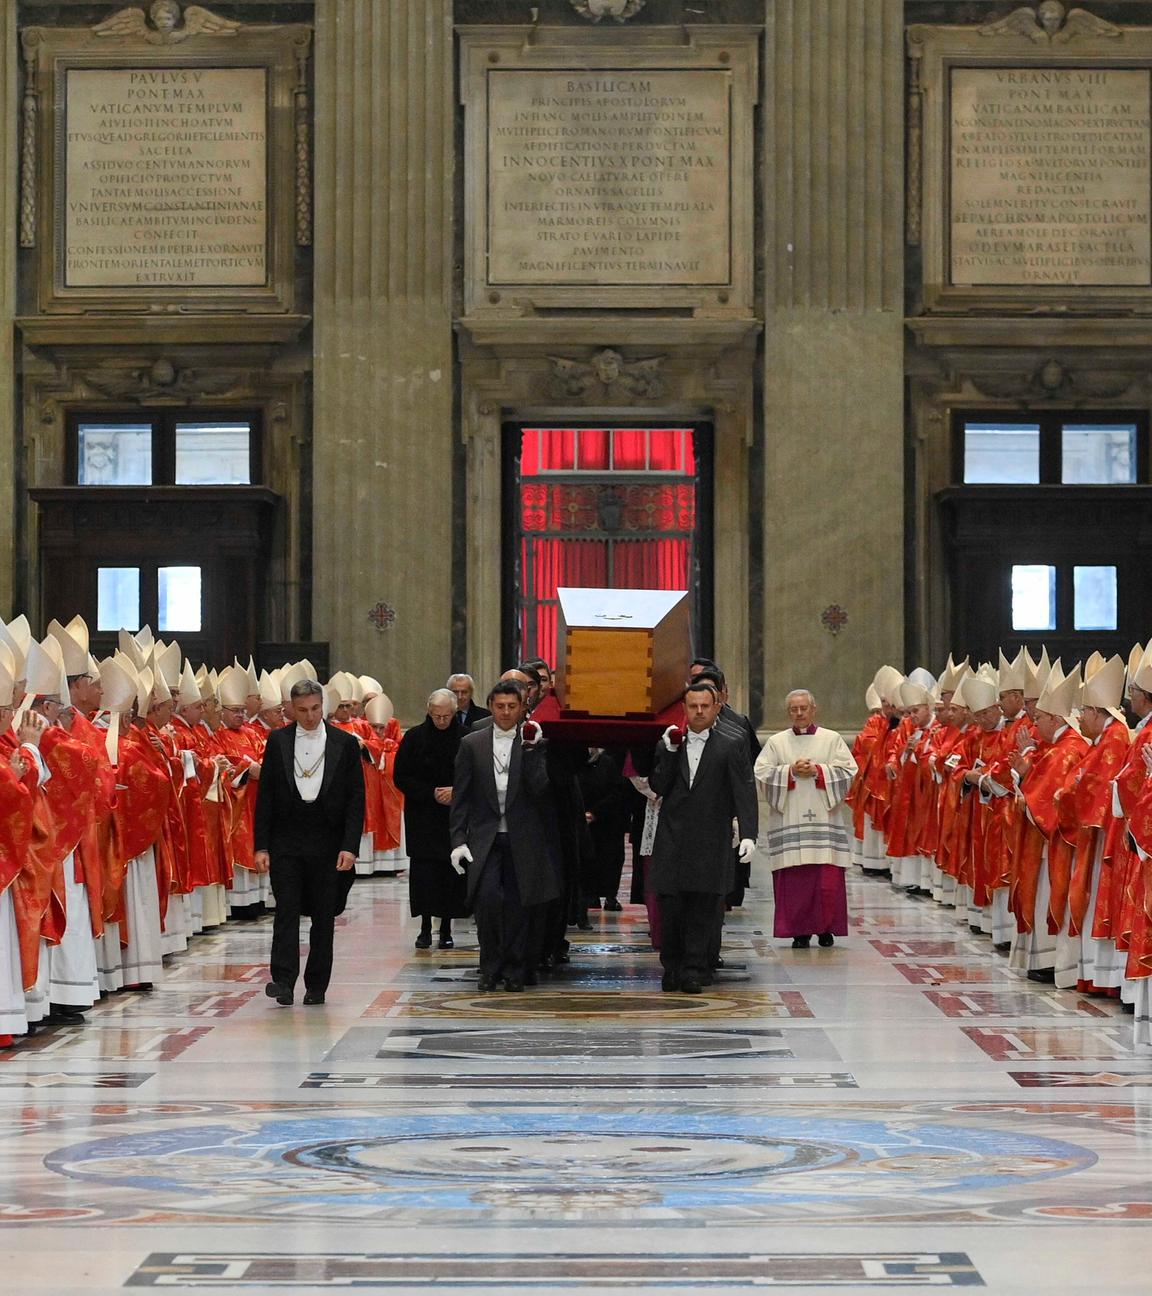 Vatikan, Vatikanstadt: Der Sarg des verstorbenen emeritierten Papstes Benedikt XVI. wird nach der öffentlichen Trauermesse für den emeritierten Papst Benedikt XVI. in den Petersdom getragen.